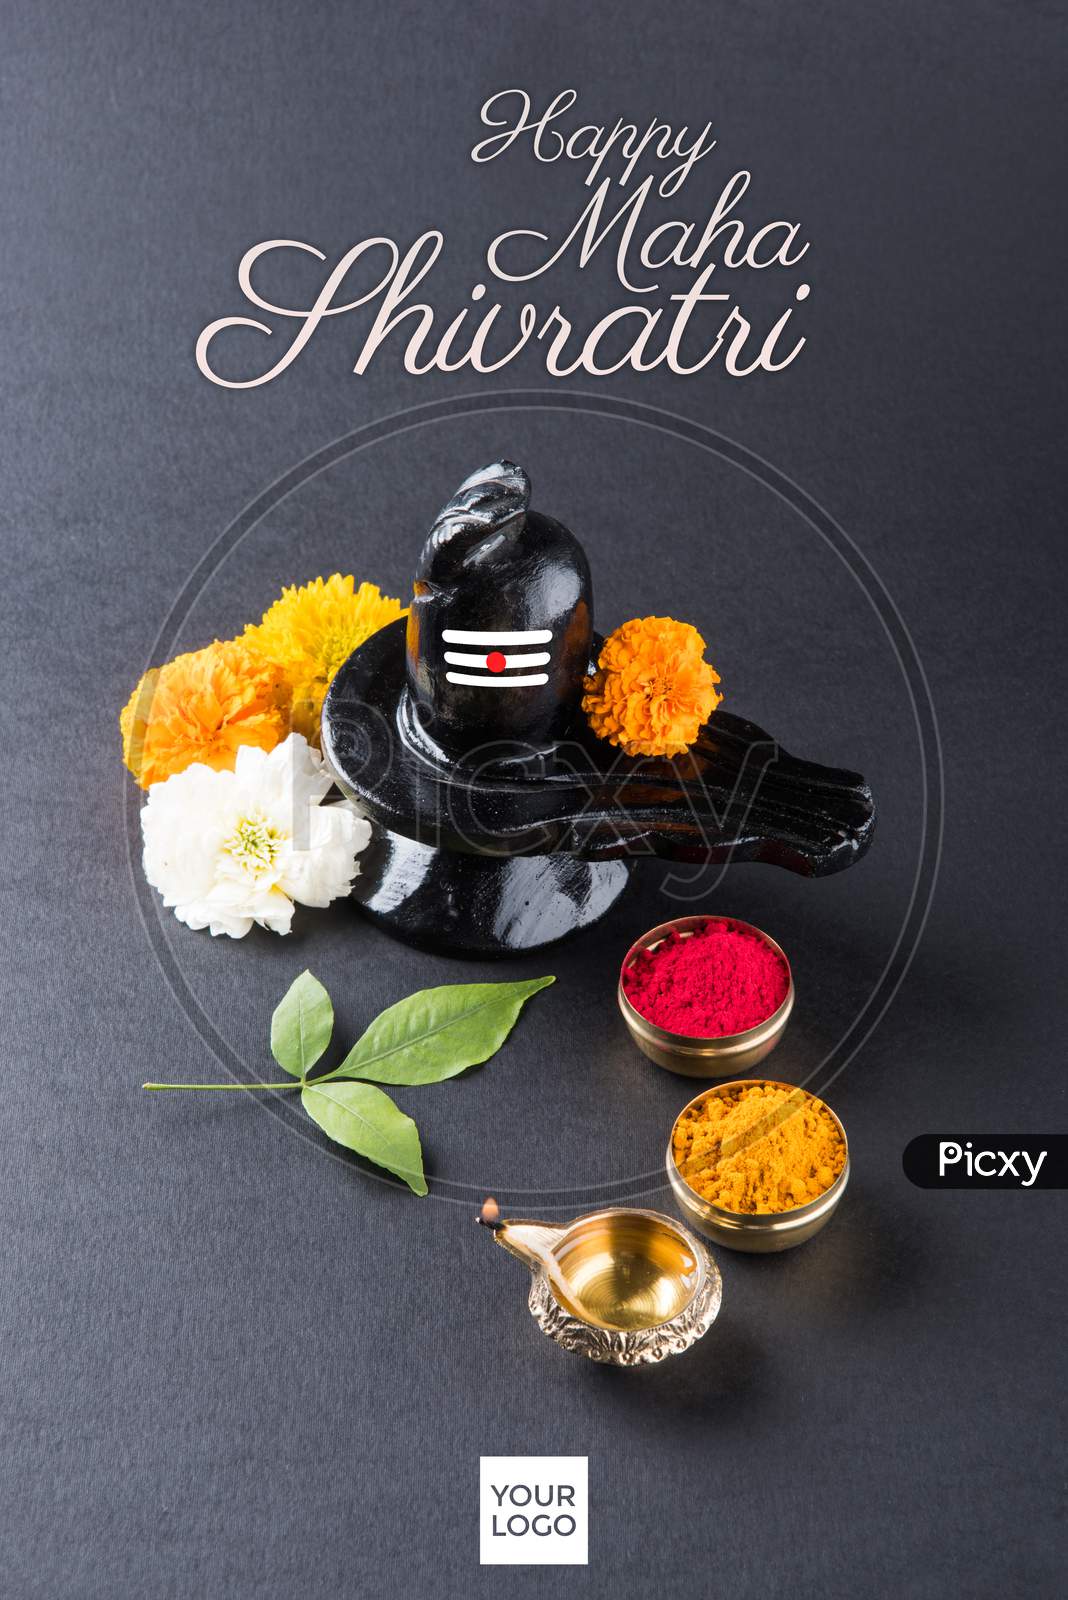 Image of Happy Maha Shivaratri greeting card-IE937729-Picxy